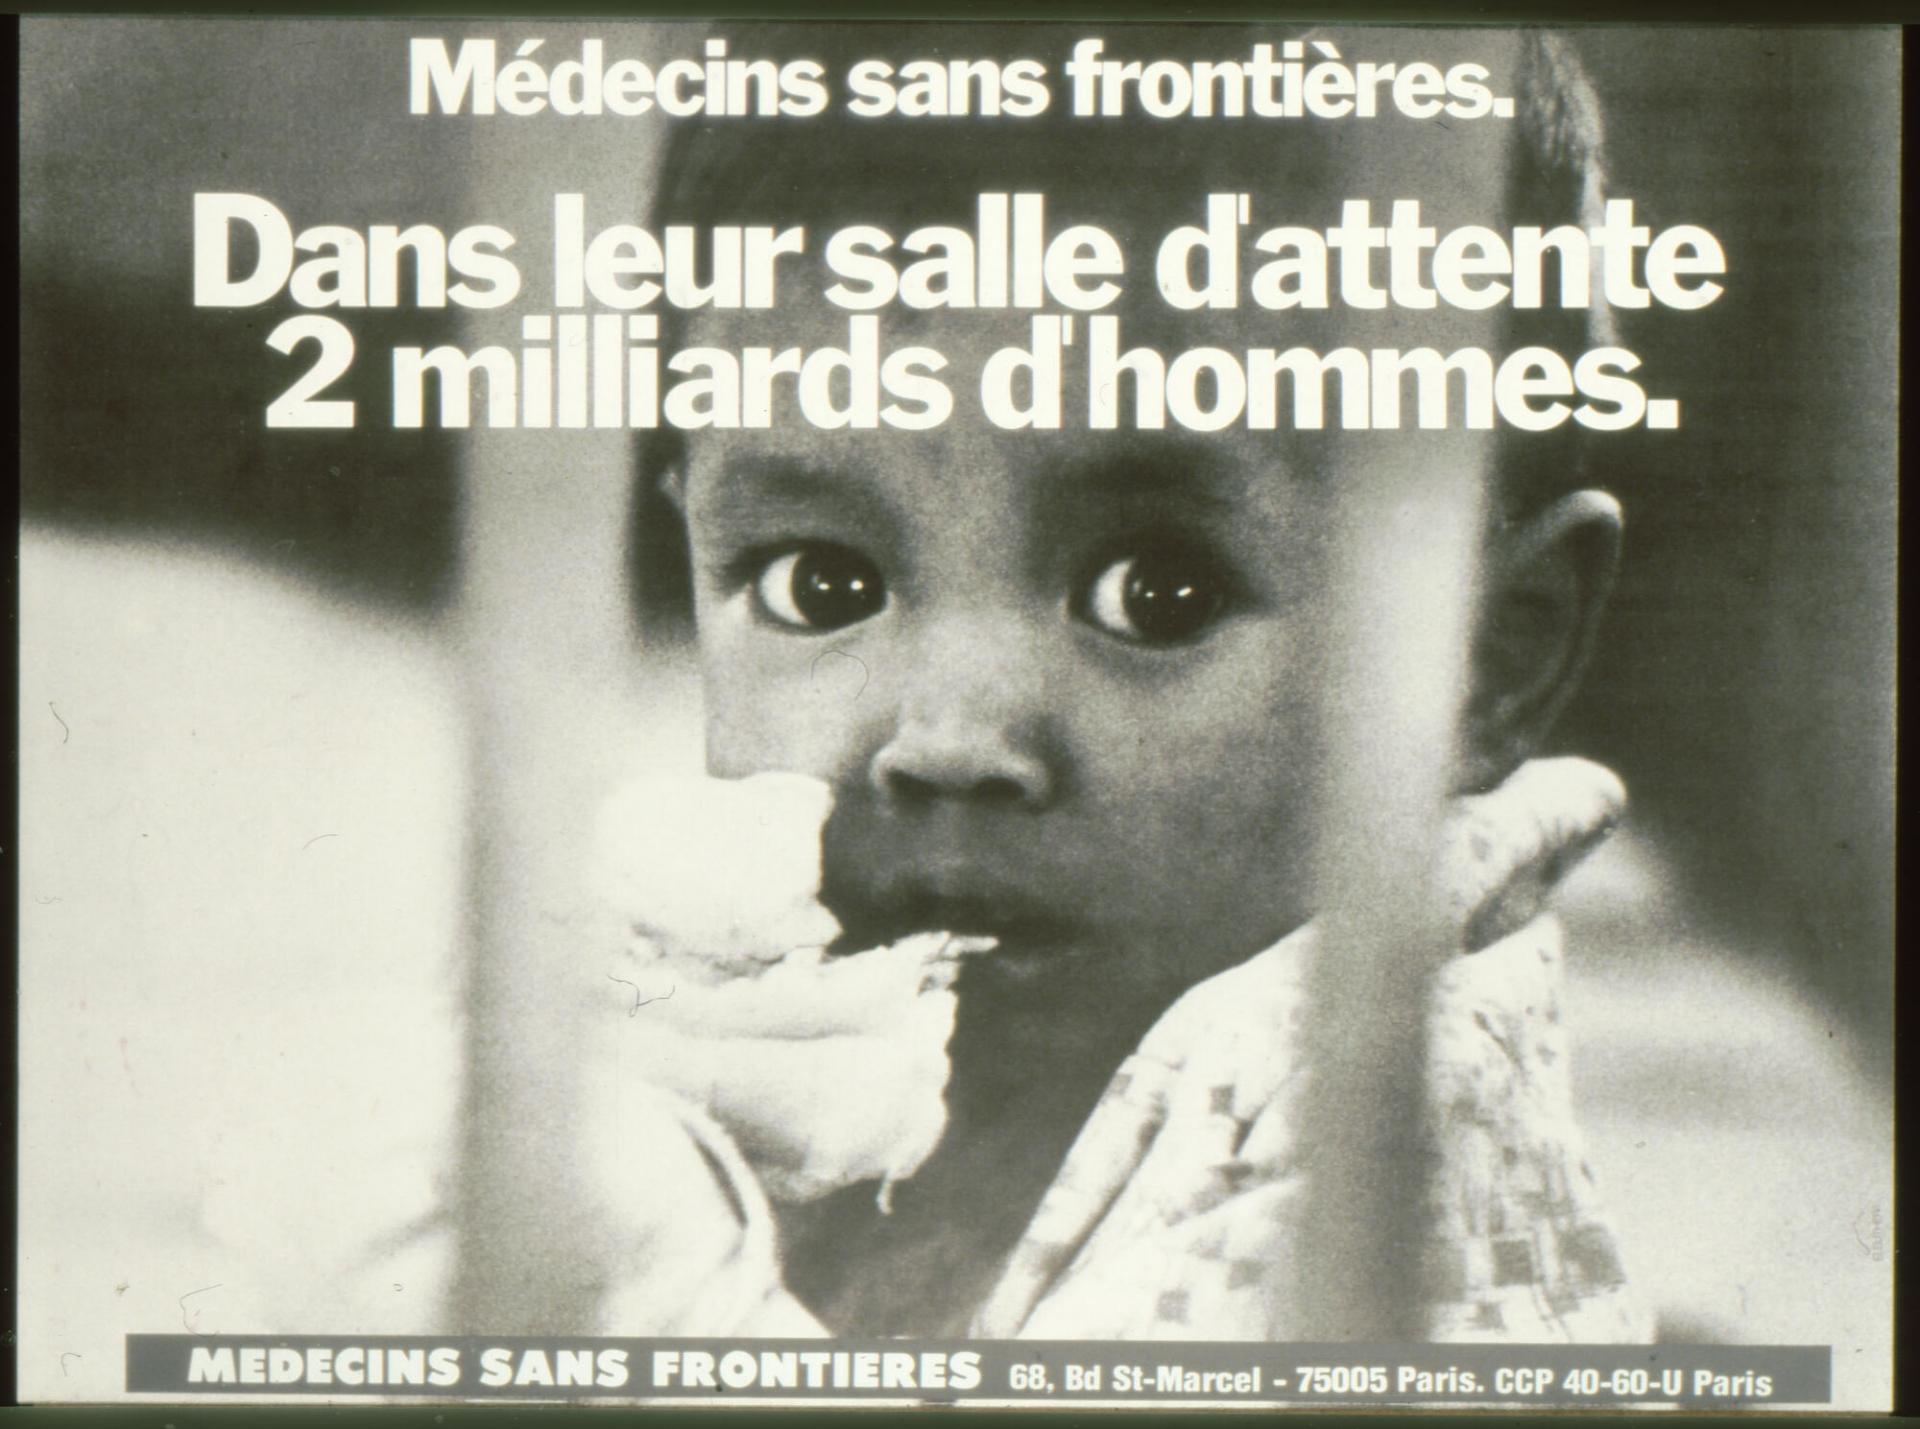 Le 22 décembre 1971, un groupe de médecins et journalistes français crée l'association Médecins Sans Frontières : une organisation médicale d’urgence, libre de sa parole et de ses actes. 